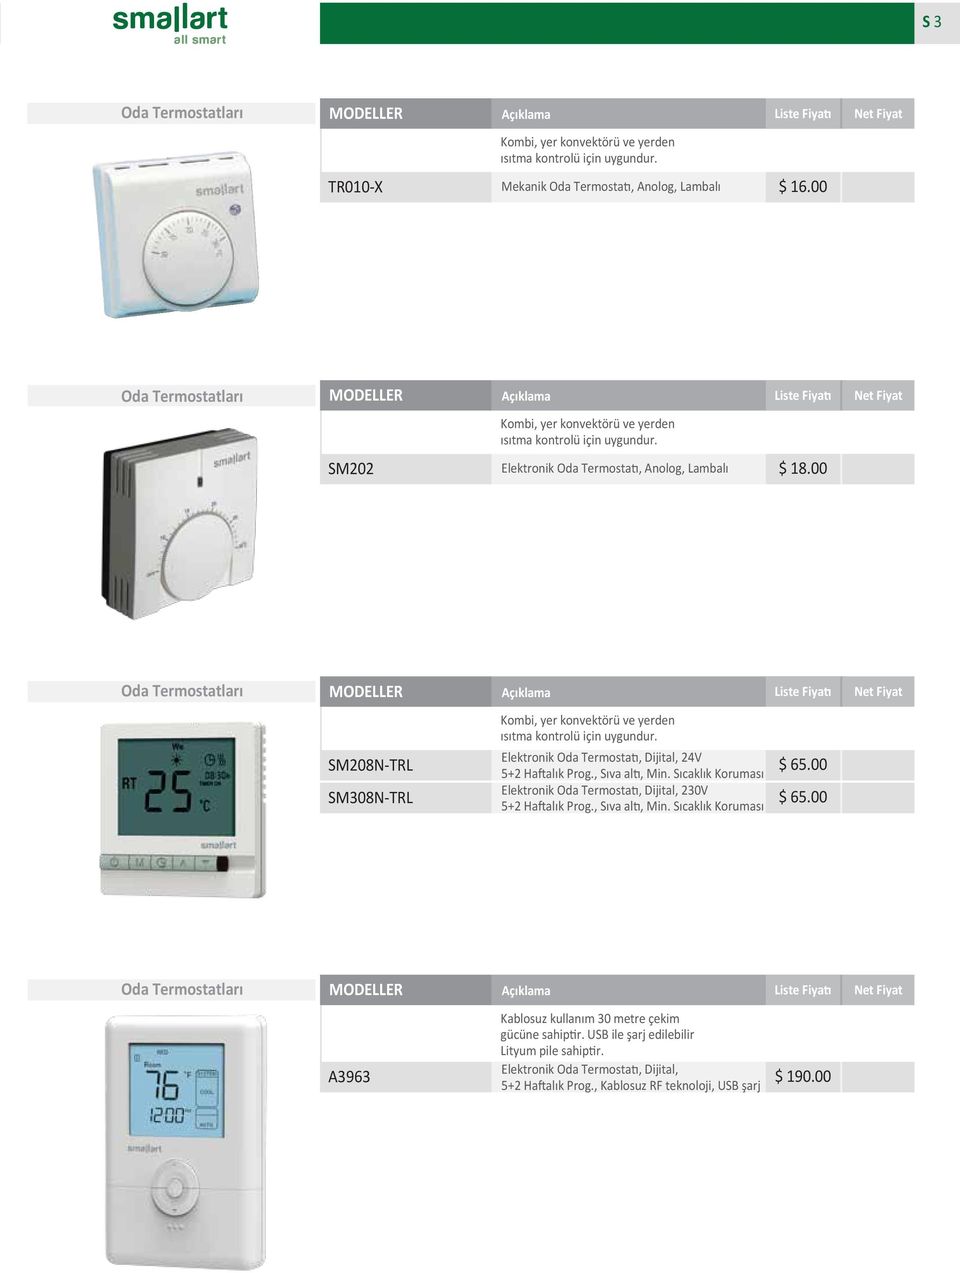 00 Oda Termostatları SM208N-TRL SM308N-TRL Kombi, yer konvektörü ve yerden ısıtma kontrolü için uygundur. Elektronik Oda Termostatı, Dijital, 24V 5+2 Haftalık Prog., Sıva altı, Min.